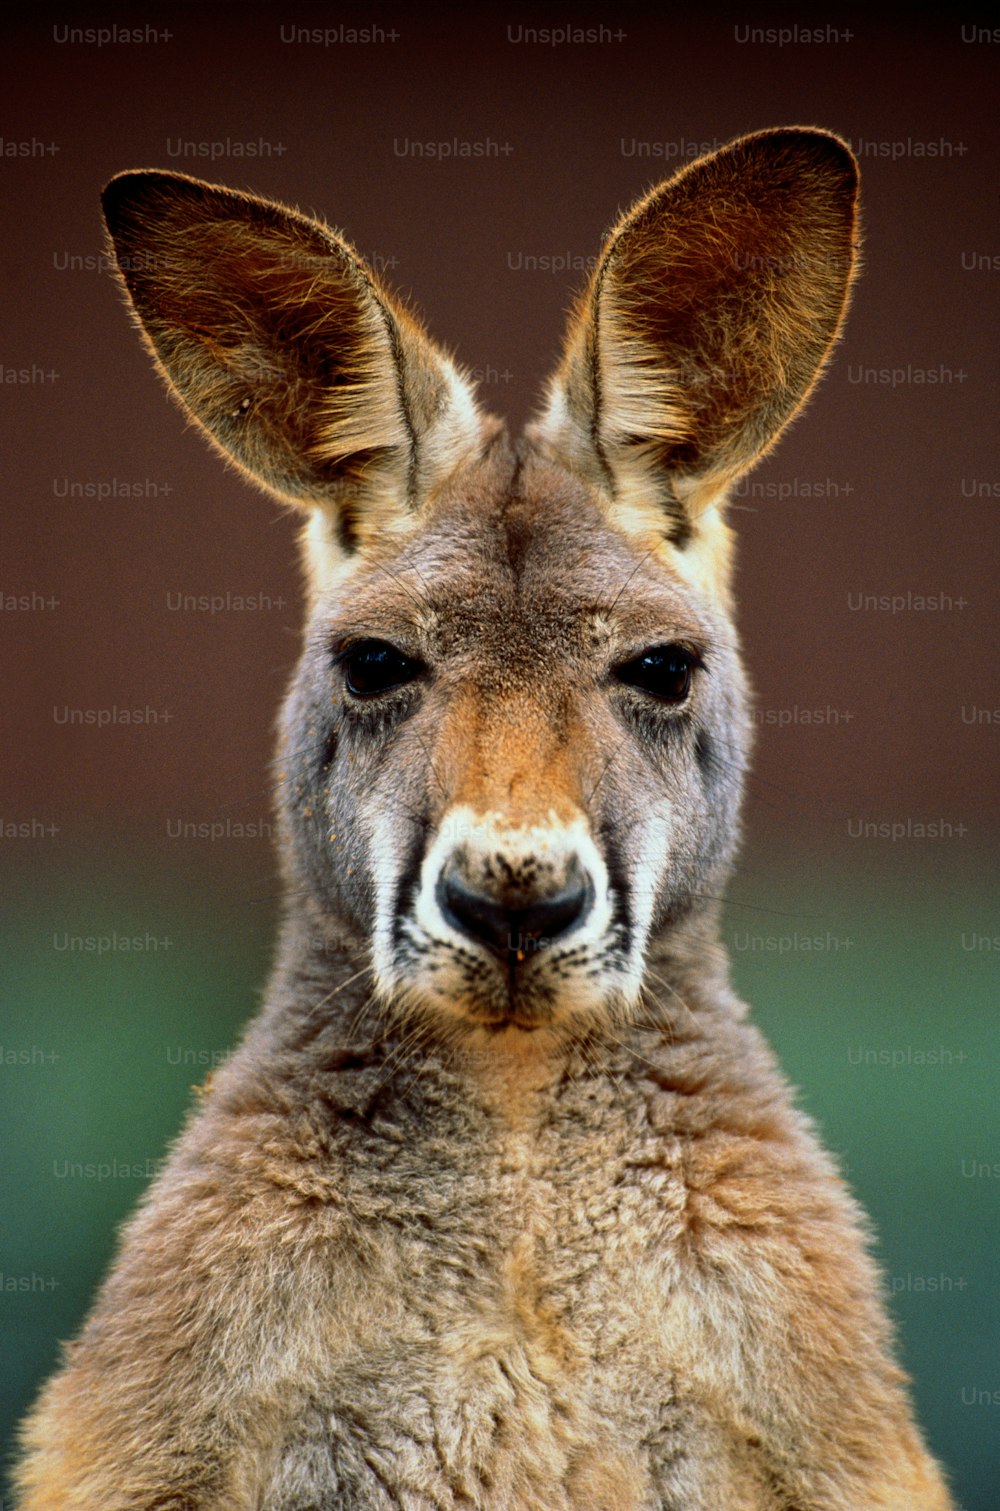 Les kangourous sont des marsupiaux originaires d’Australie et des îles voisines. Ils ont de grandes et puissantes pattes arrière qui sont utilisées pour sautiller ; Un grand kangourou peut sauter 9 mètres (30 pieds) et de longues queues qui sont utilisées pour l’équilibre et le soutien.